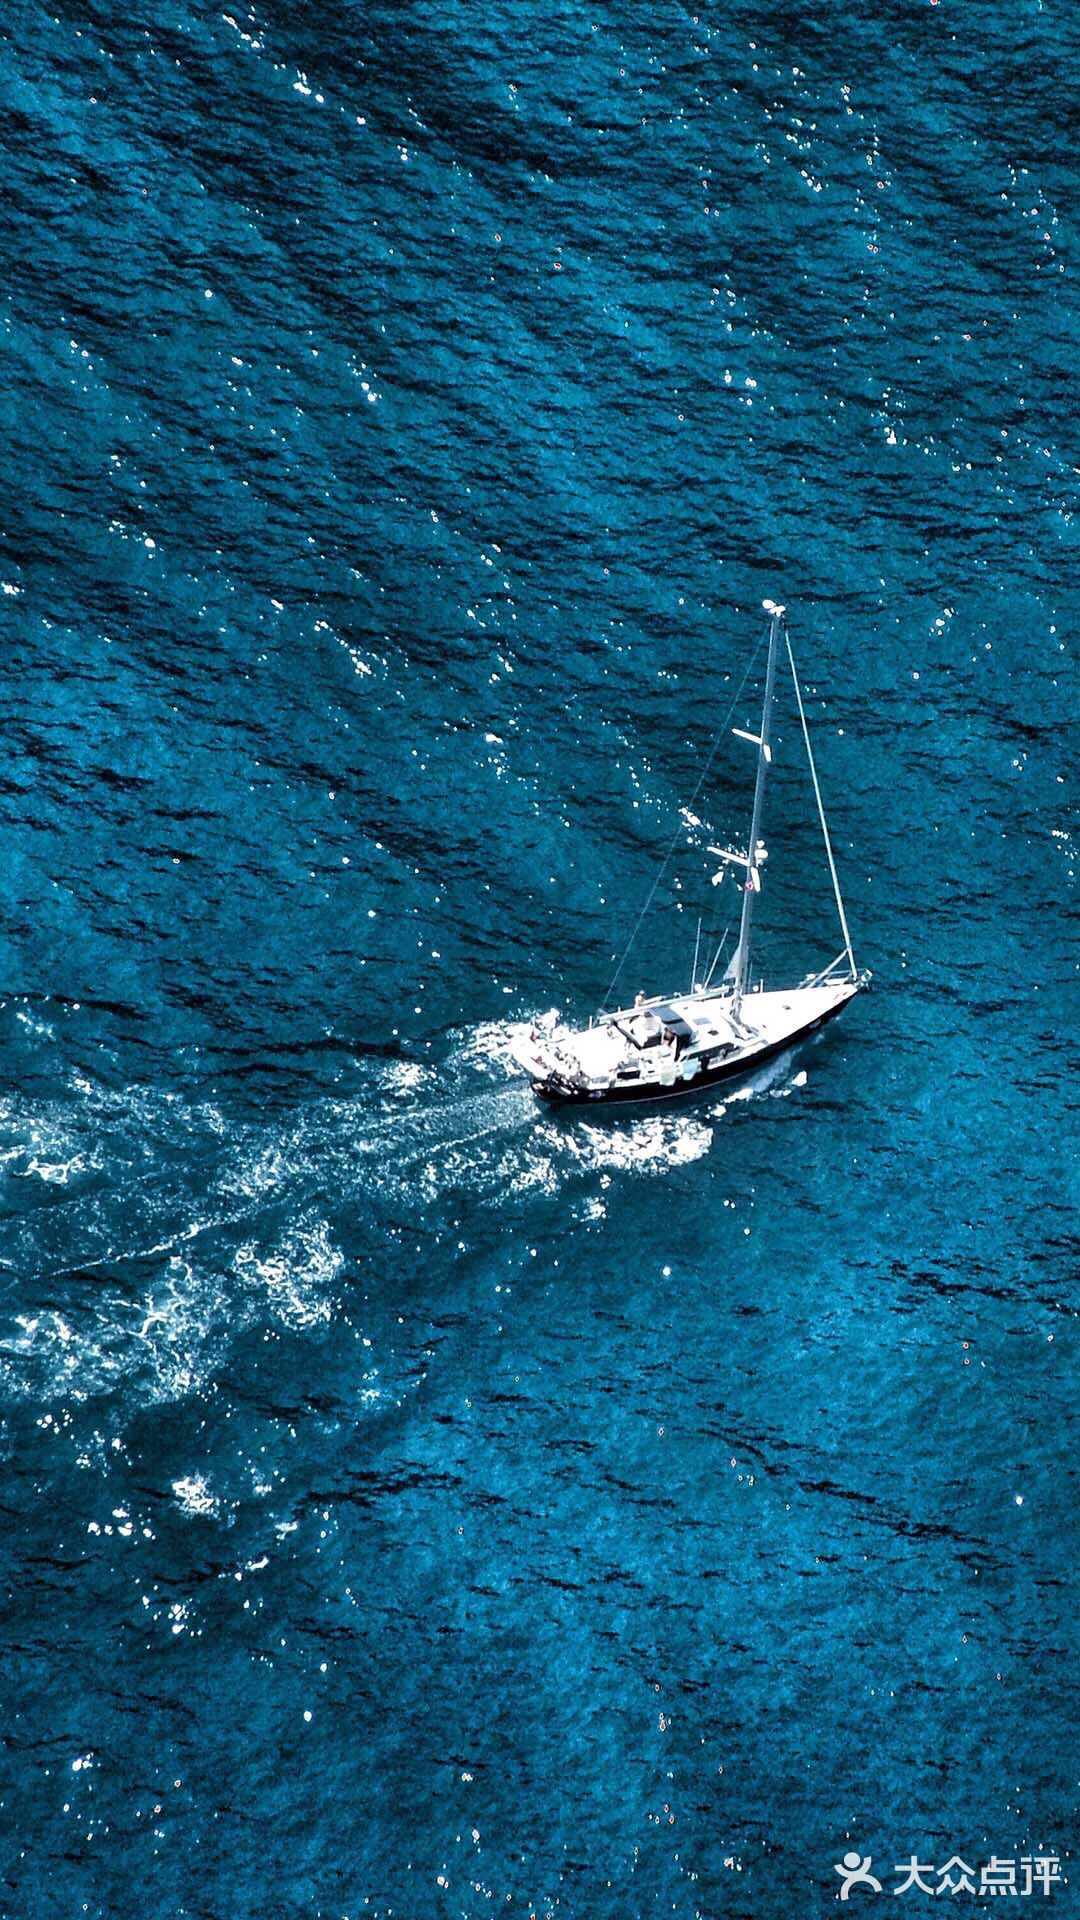 漂亮的帆船壁纸 无忧无虑的生活 帆船运动是人类利用风